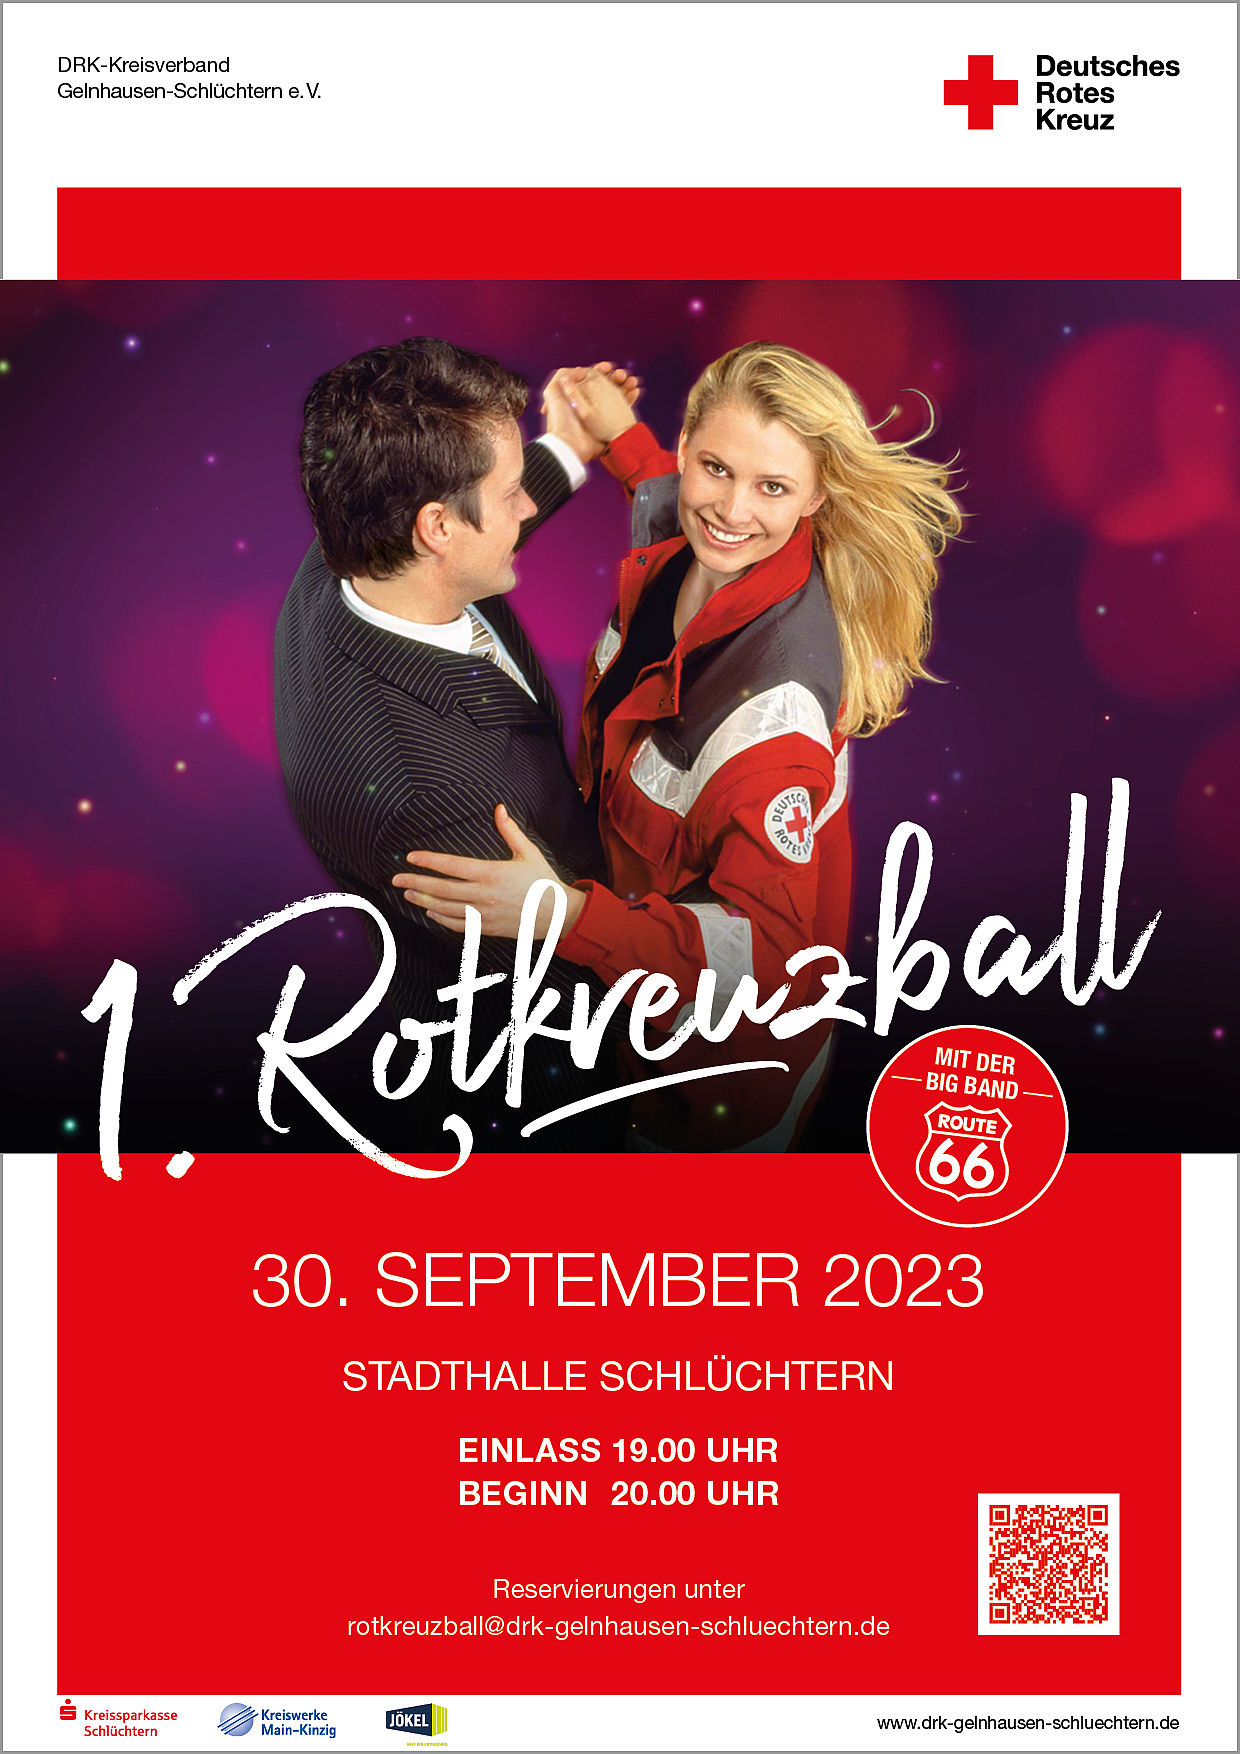 1. Rotkreuzball des DRK-Kreisverband Gelnhausen-Schlüchtern e.V.